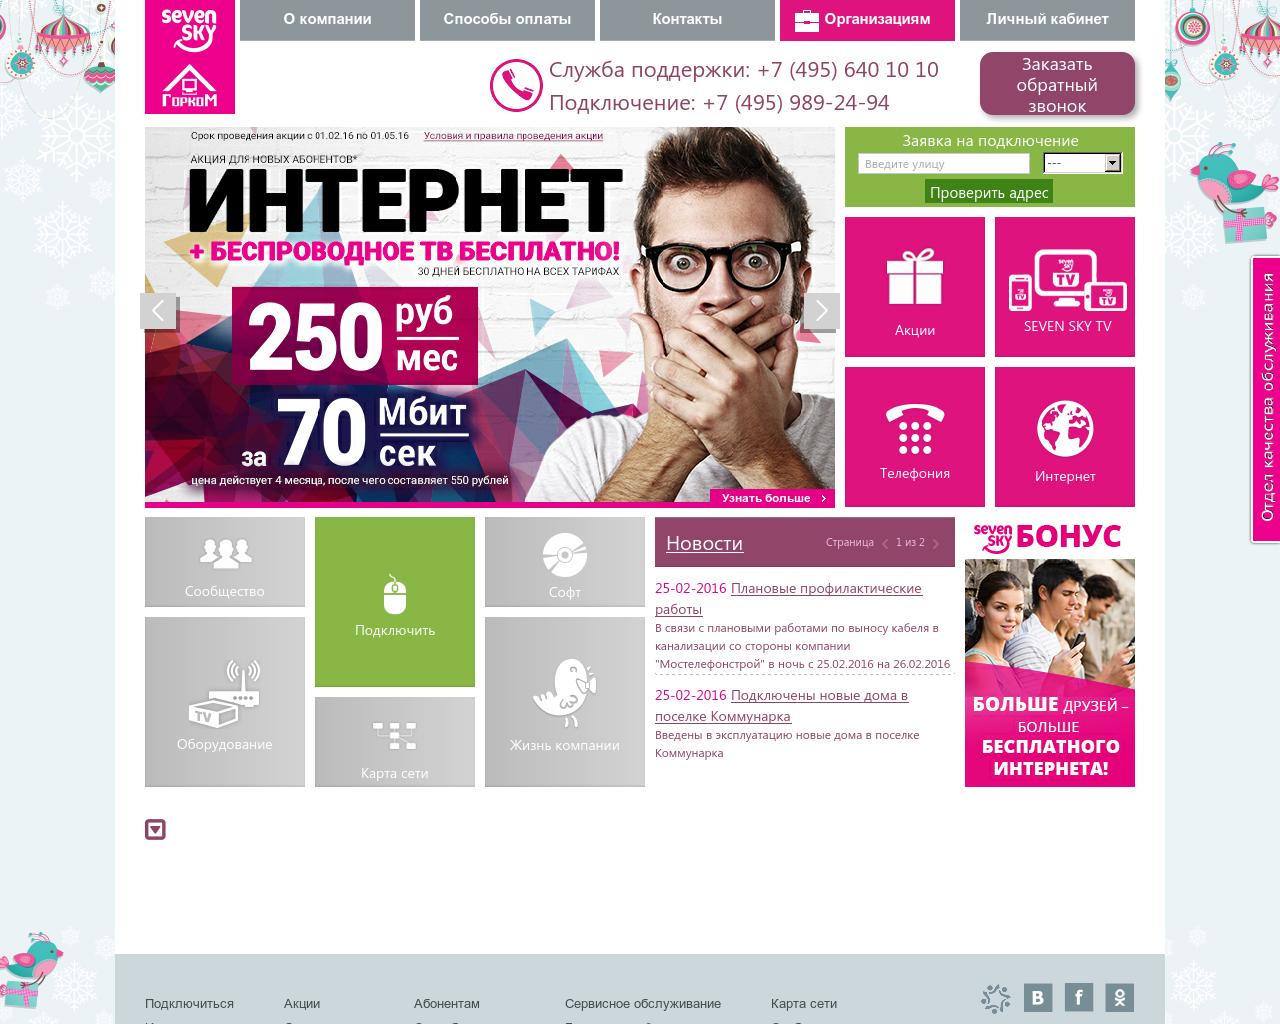 Изображение сайта telprof.ru в разрешении 1280x1024